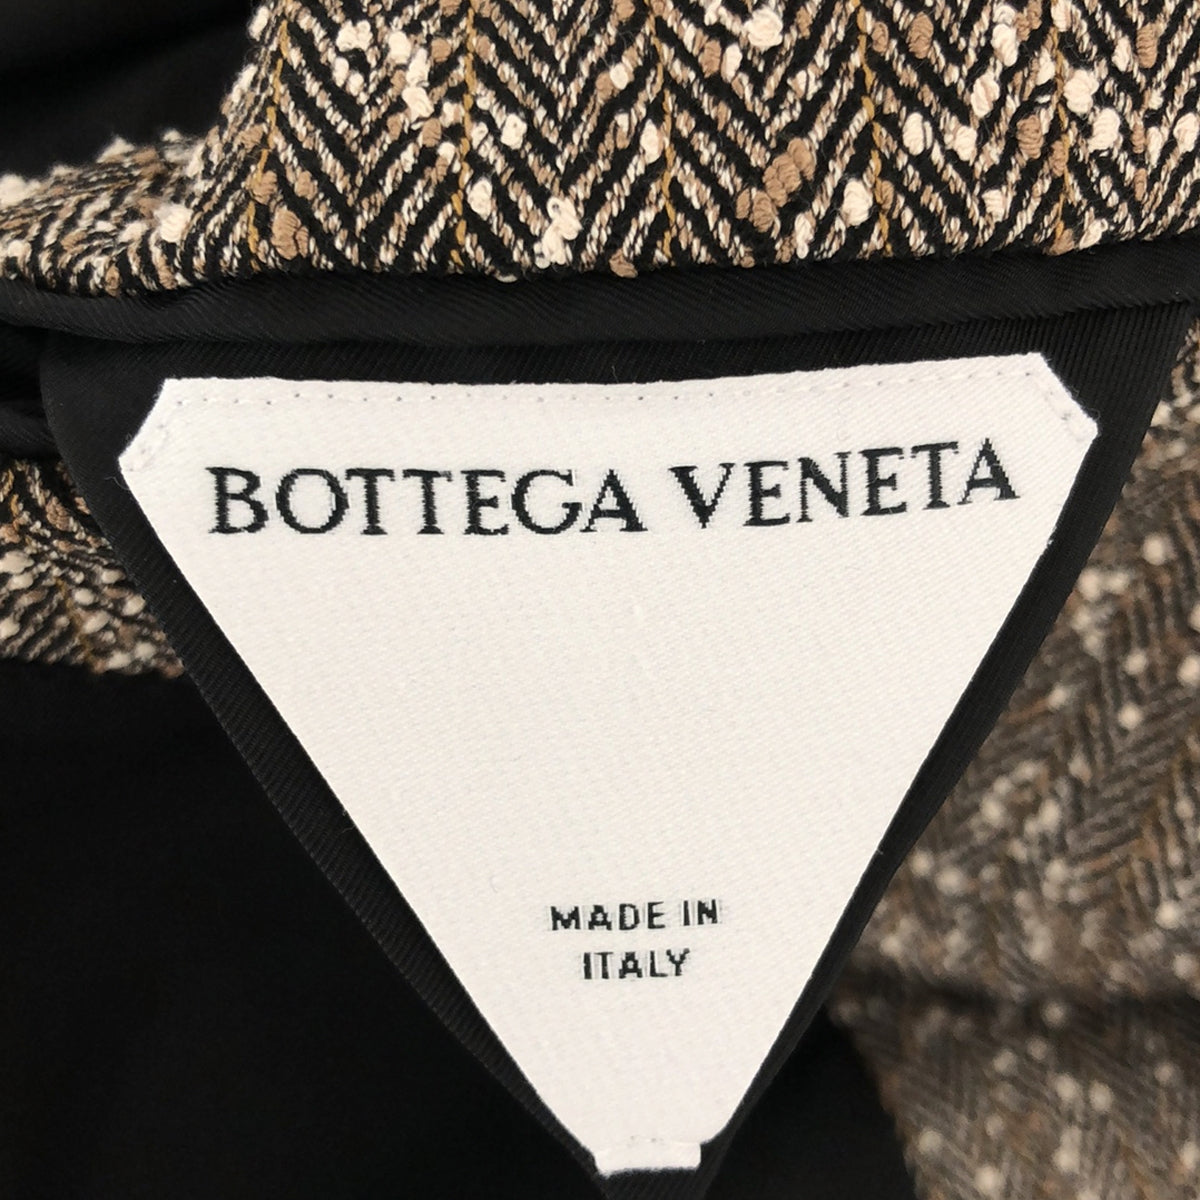 BOTTEGA VENETA / ボッテガヴェネタ | ヘリンボーン ツイード ダブルジャケット | 34 | レディース